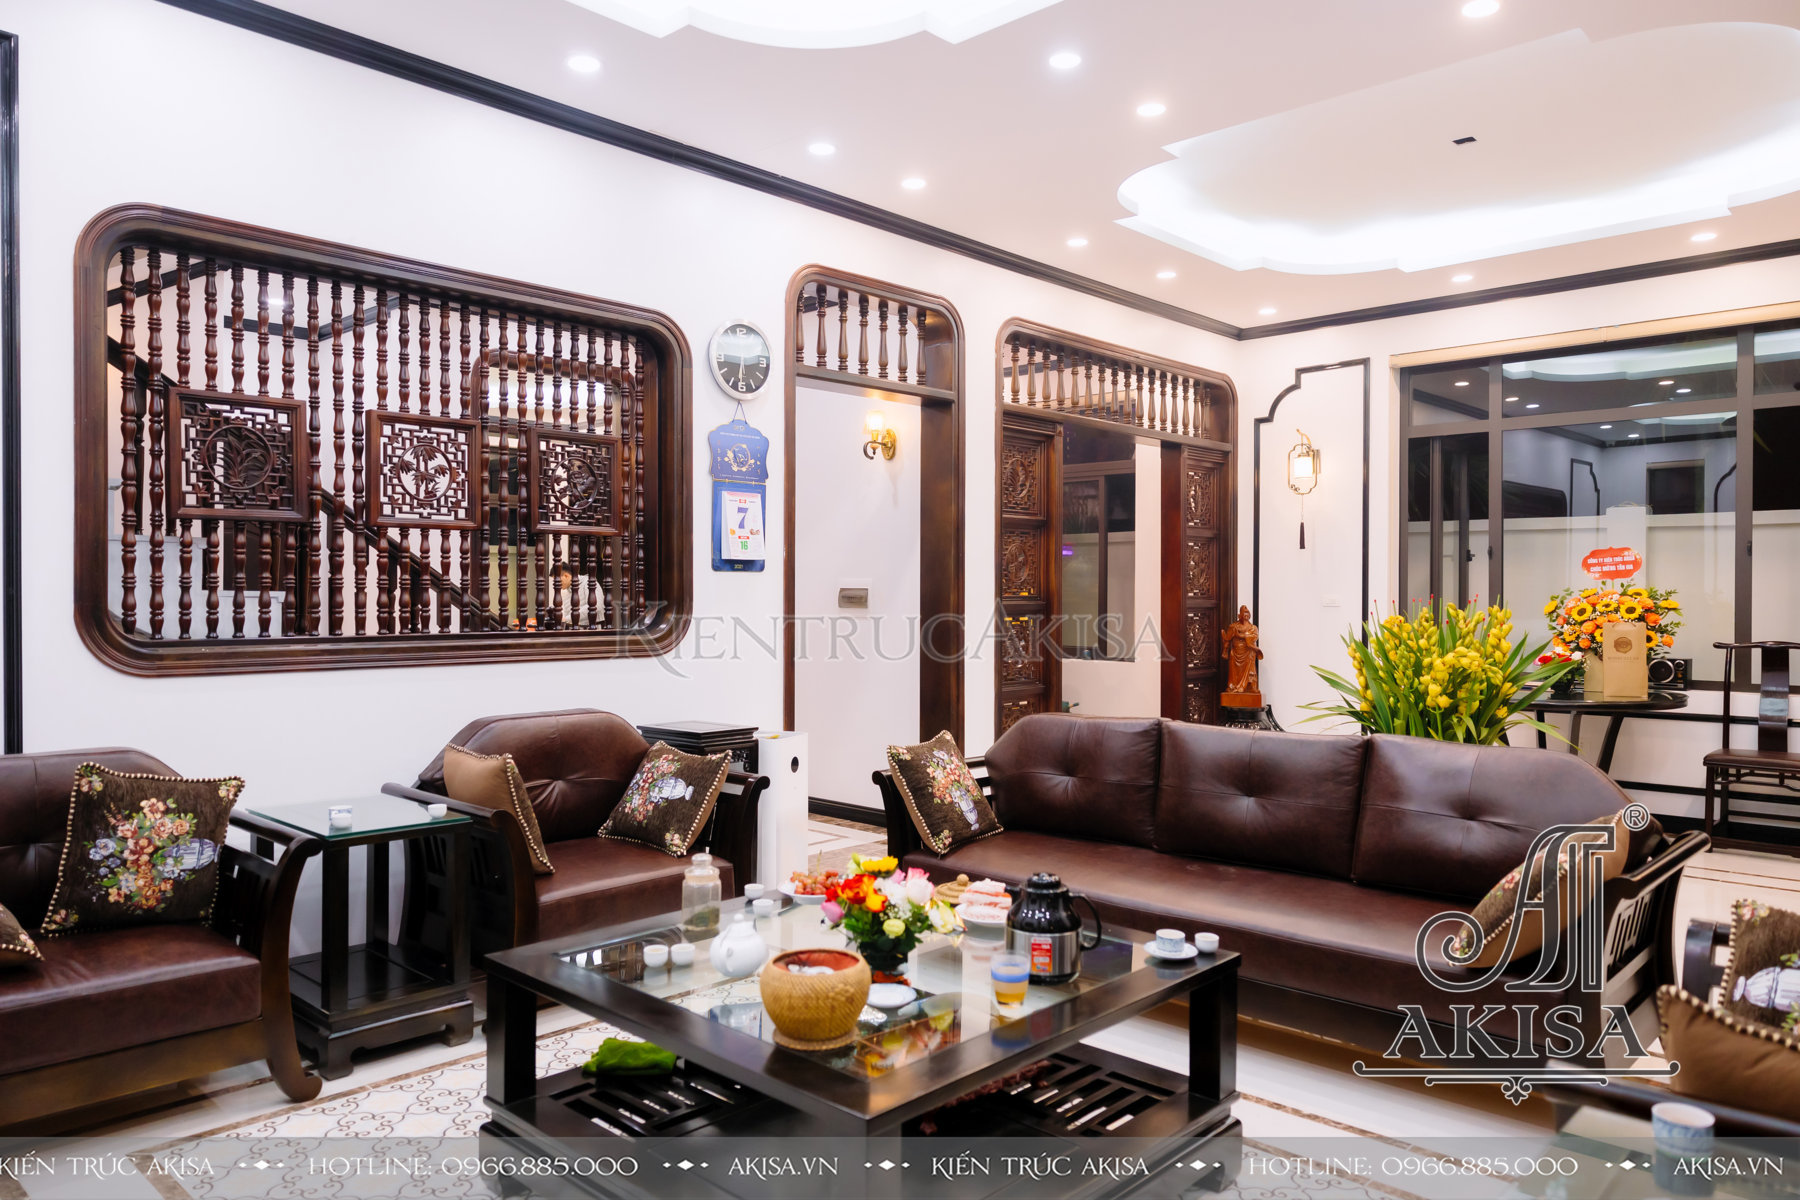 Hoàn thiện kiến trúc - nội thất biệt thự 3 tầng tại Hà Nội